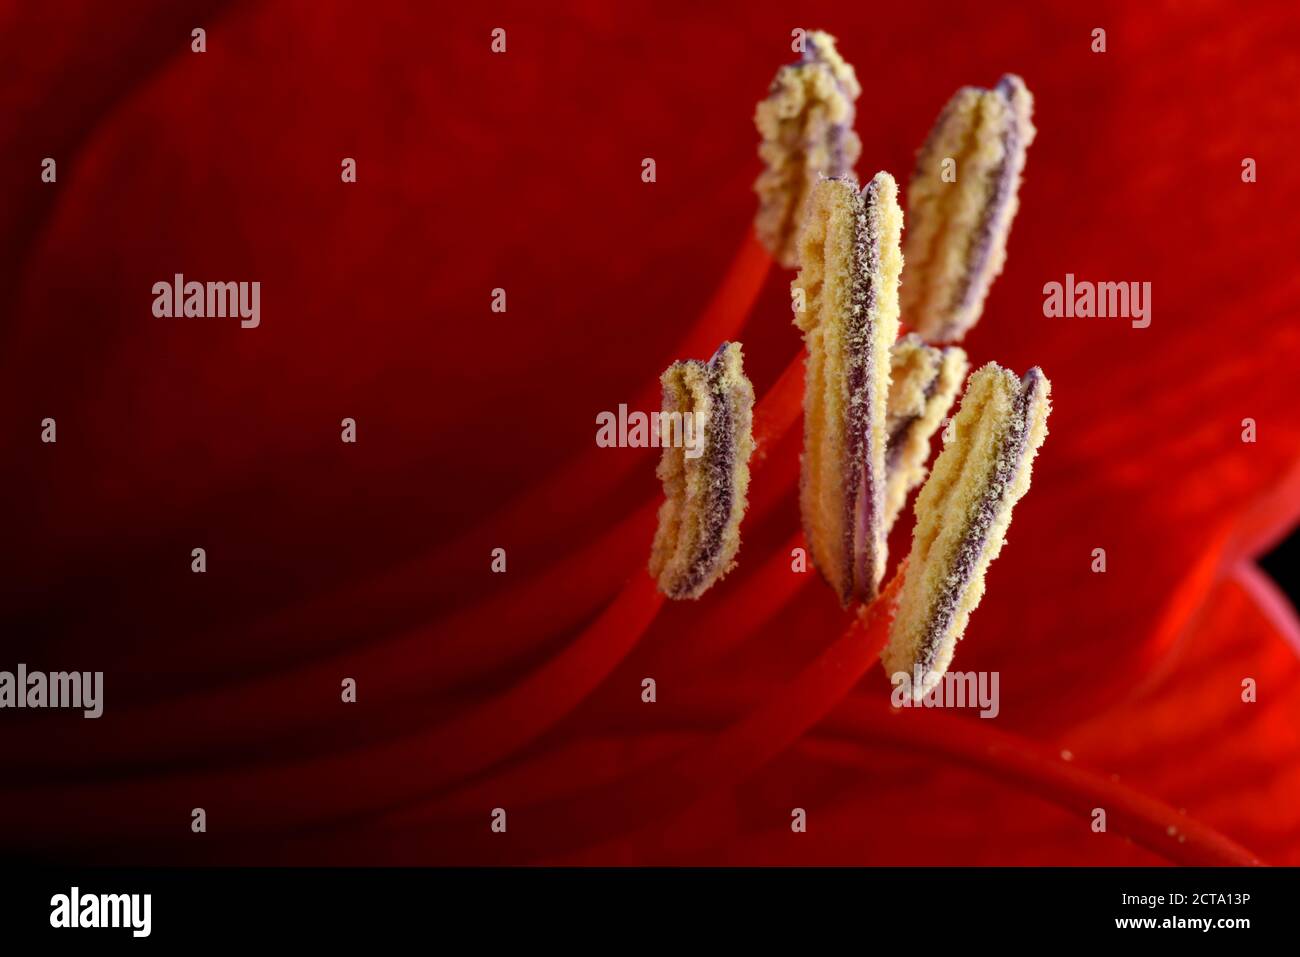 Stamen of red amaryllis, Amaryllidaceae, close-up Stock Photo